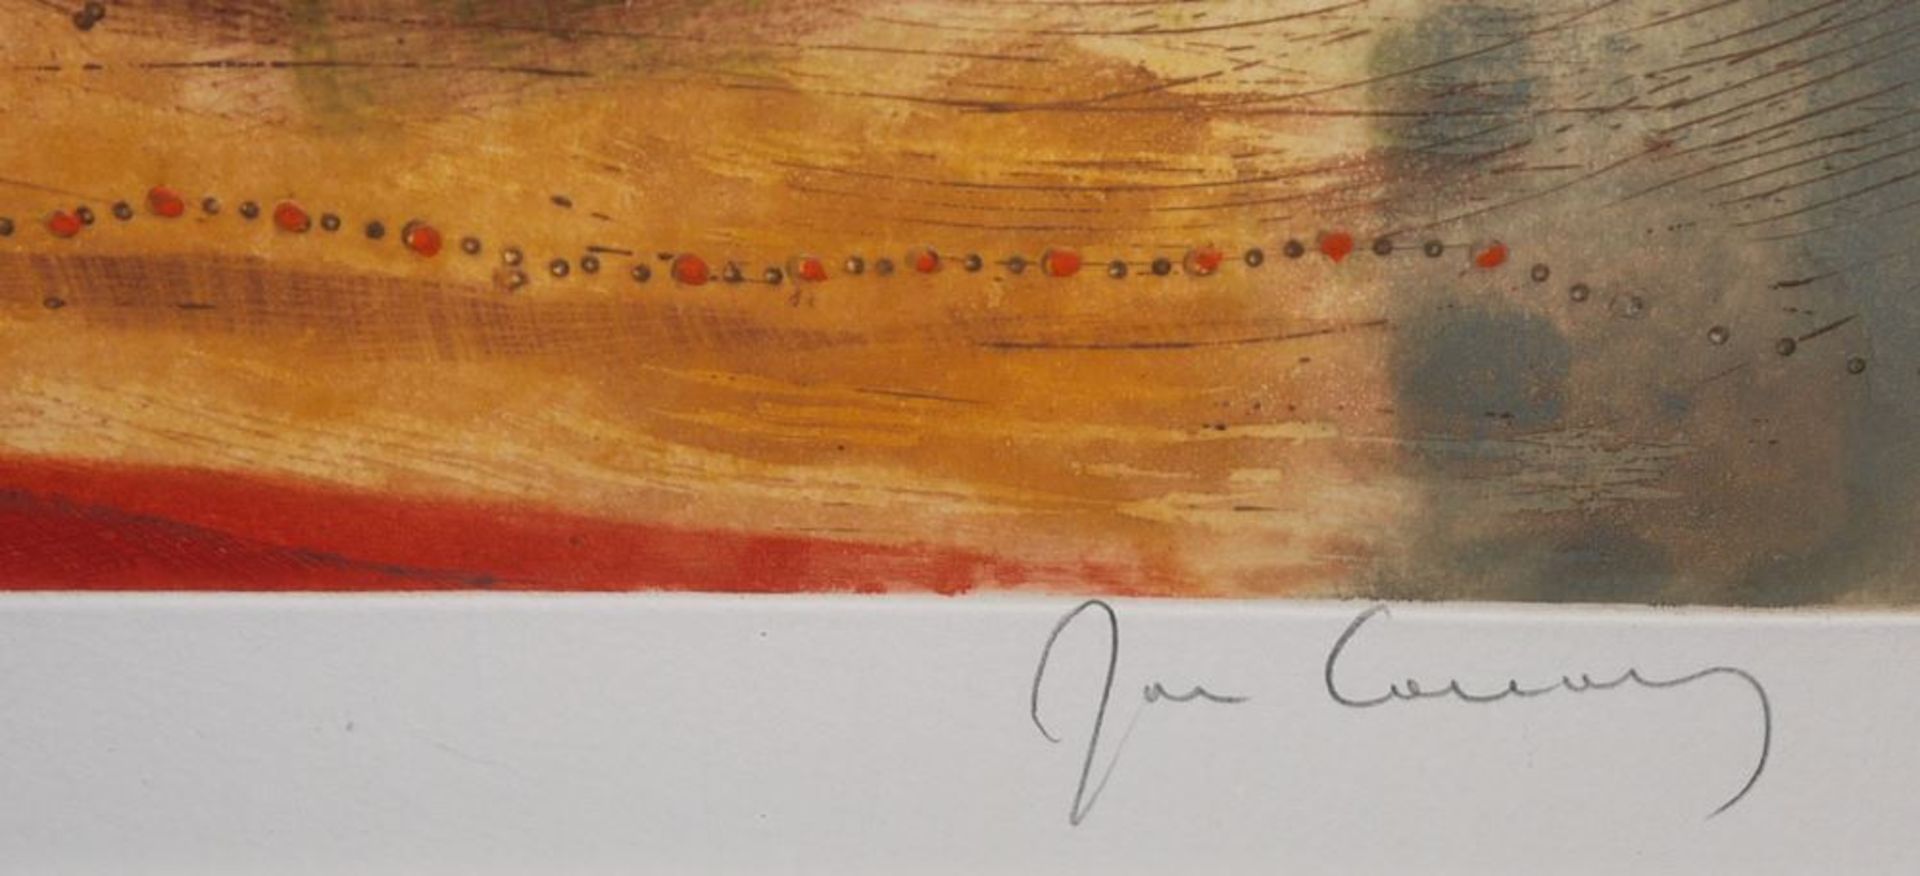 René Carcan, 2 sign. Farbradierungen, galeriegerahmt - Image 2 of 4